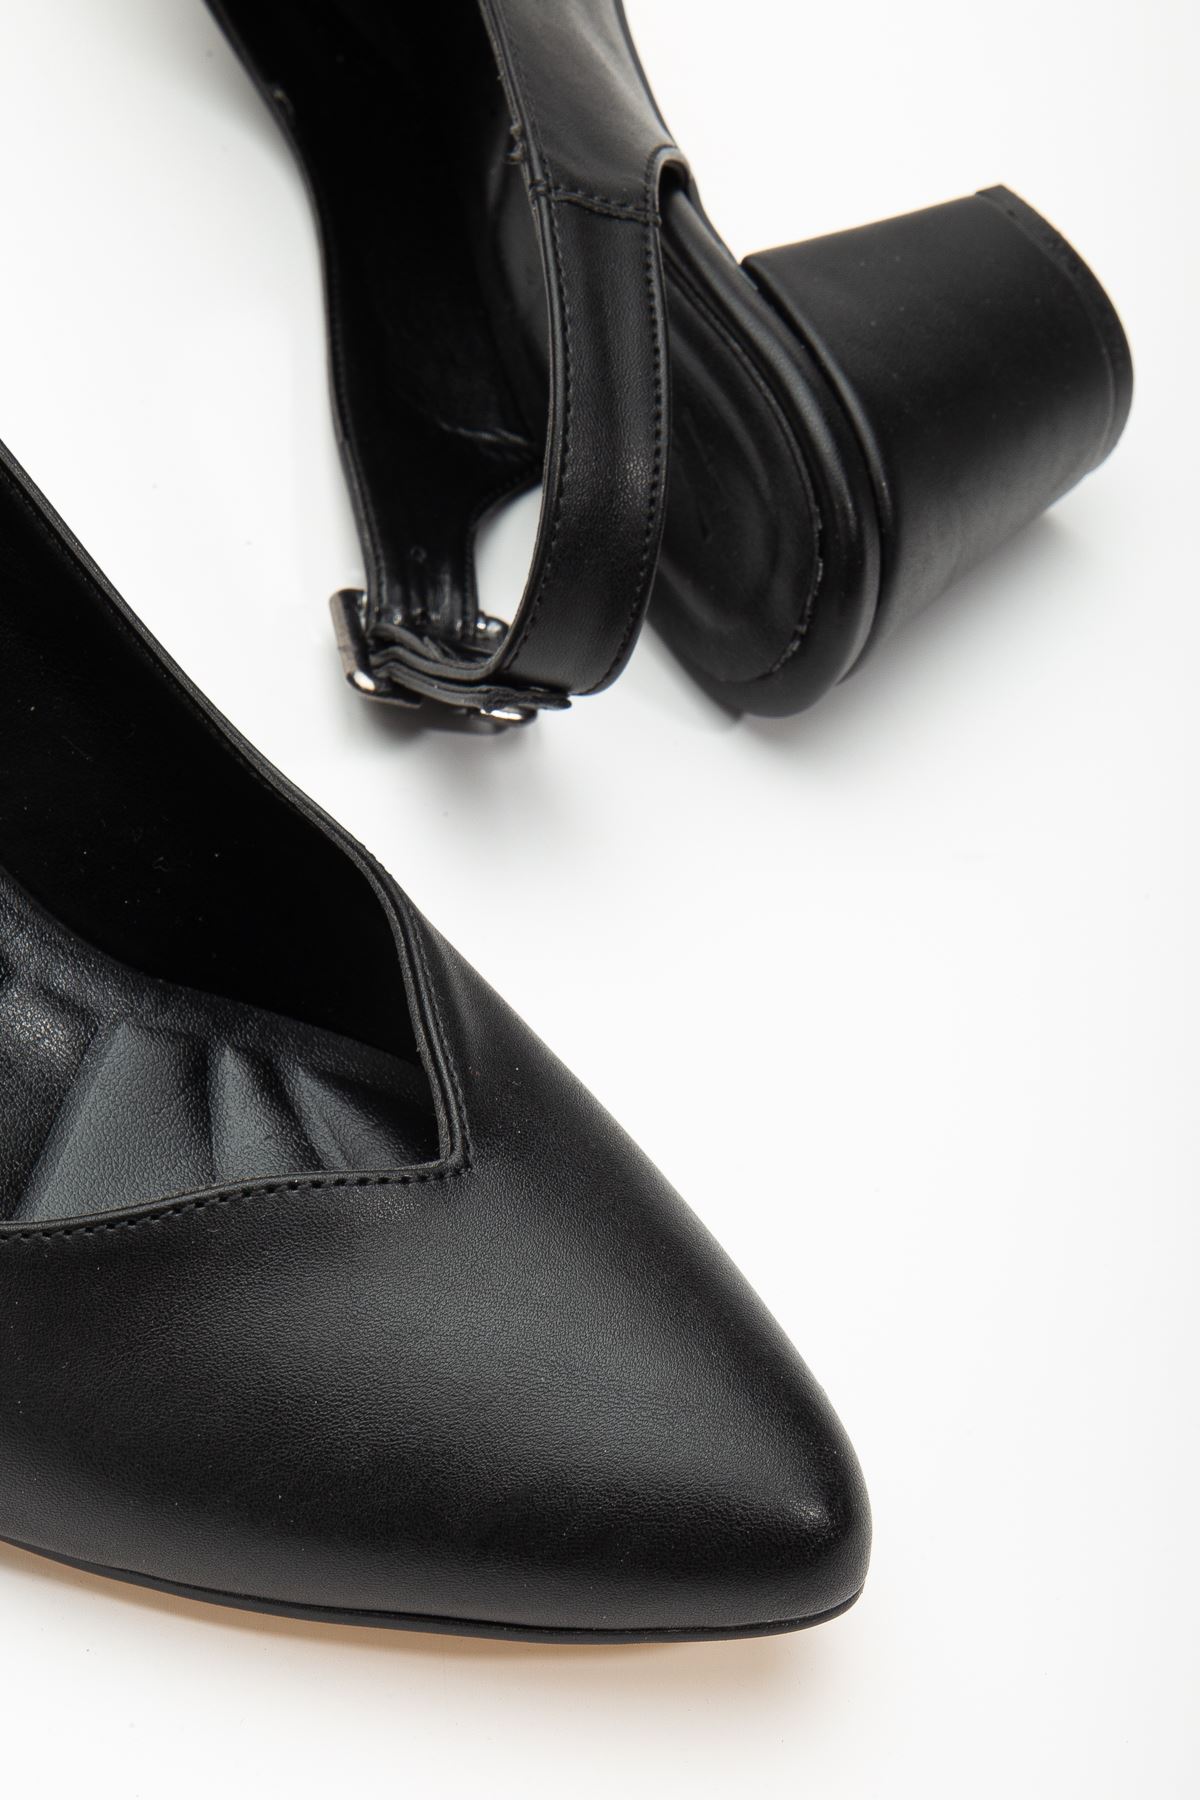 Milika Siyah Cilt Sivri Burunlu Topuklu Kadın Ayakkabı